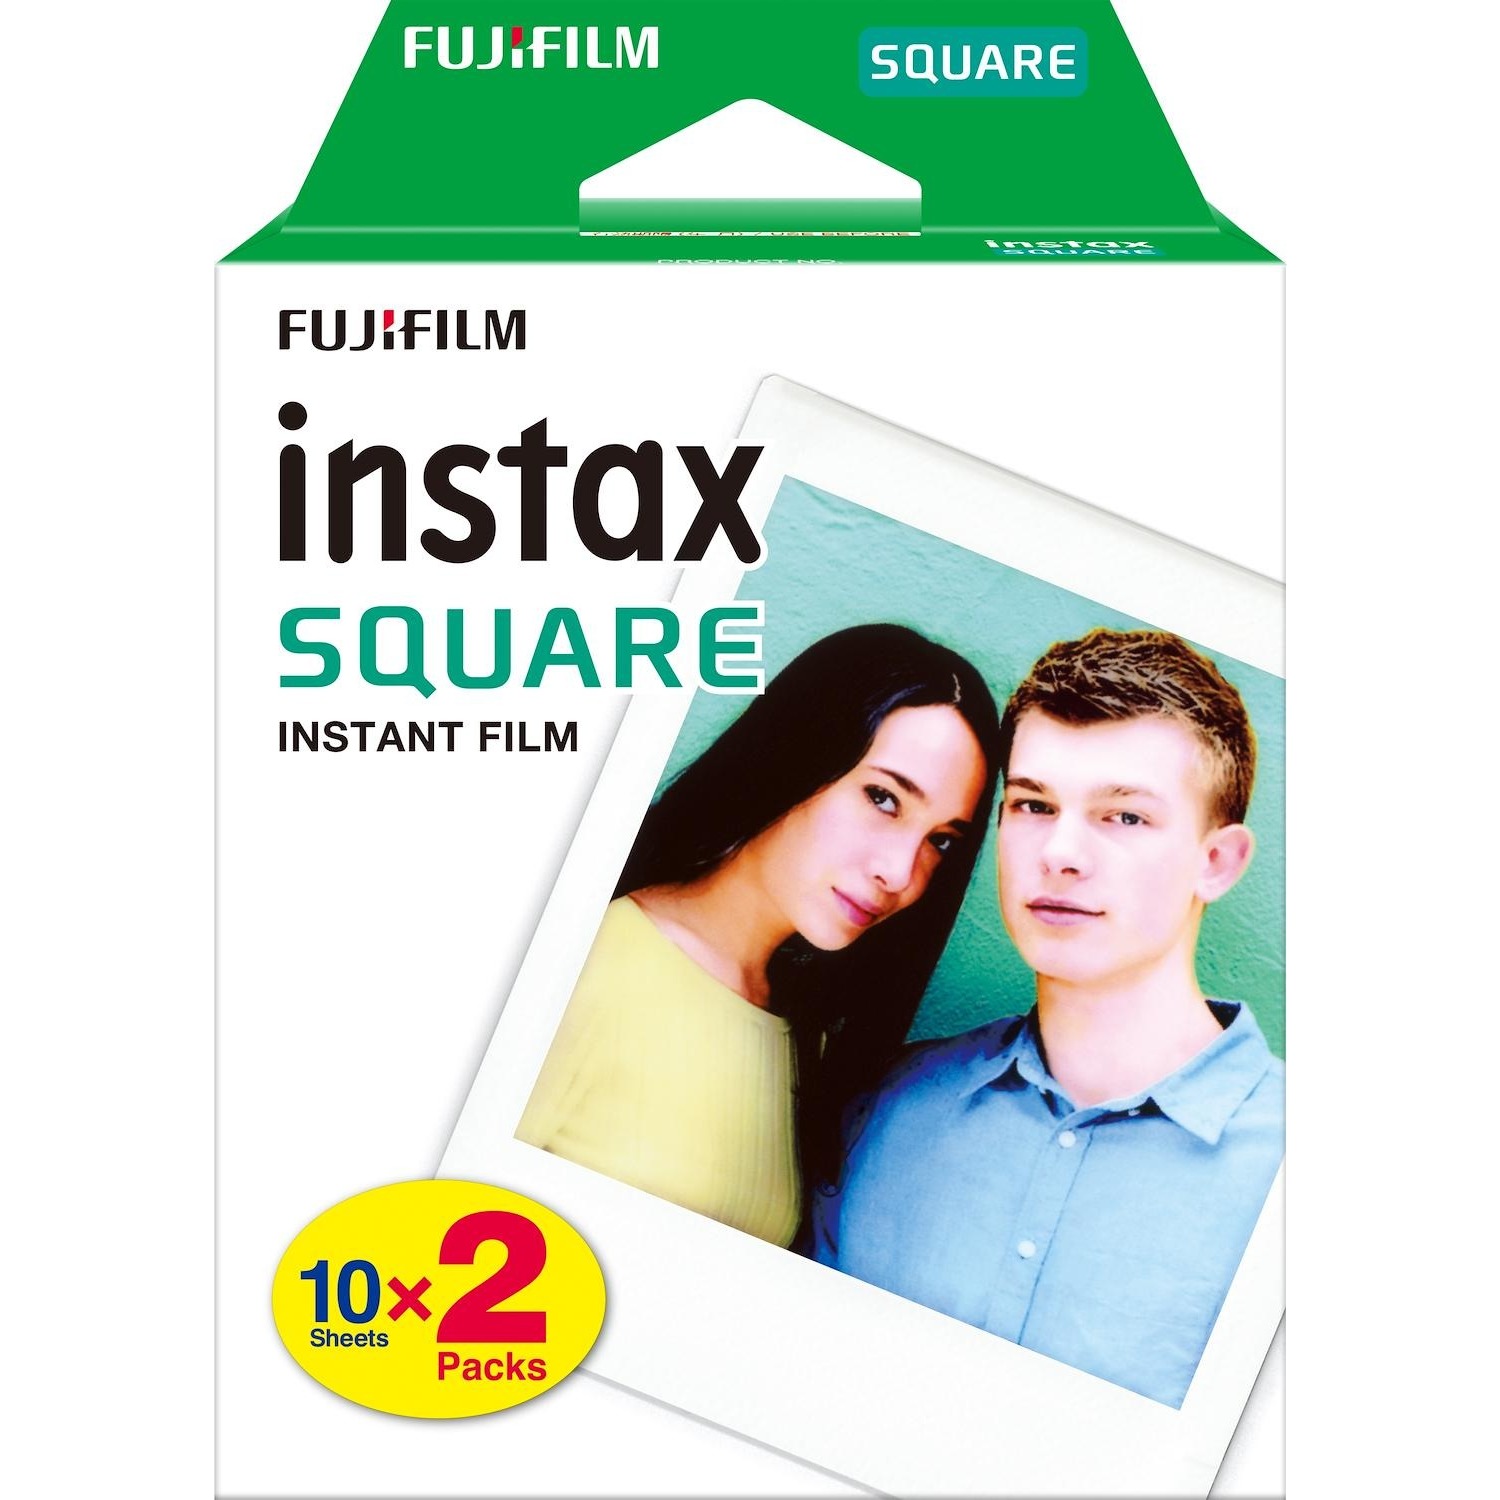 Immagine per Pellicole Fujifilm per Square pacco doppio da DIMOStore